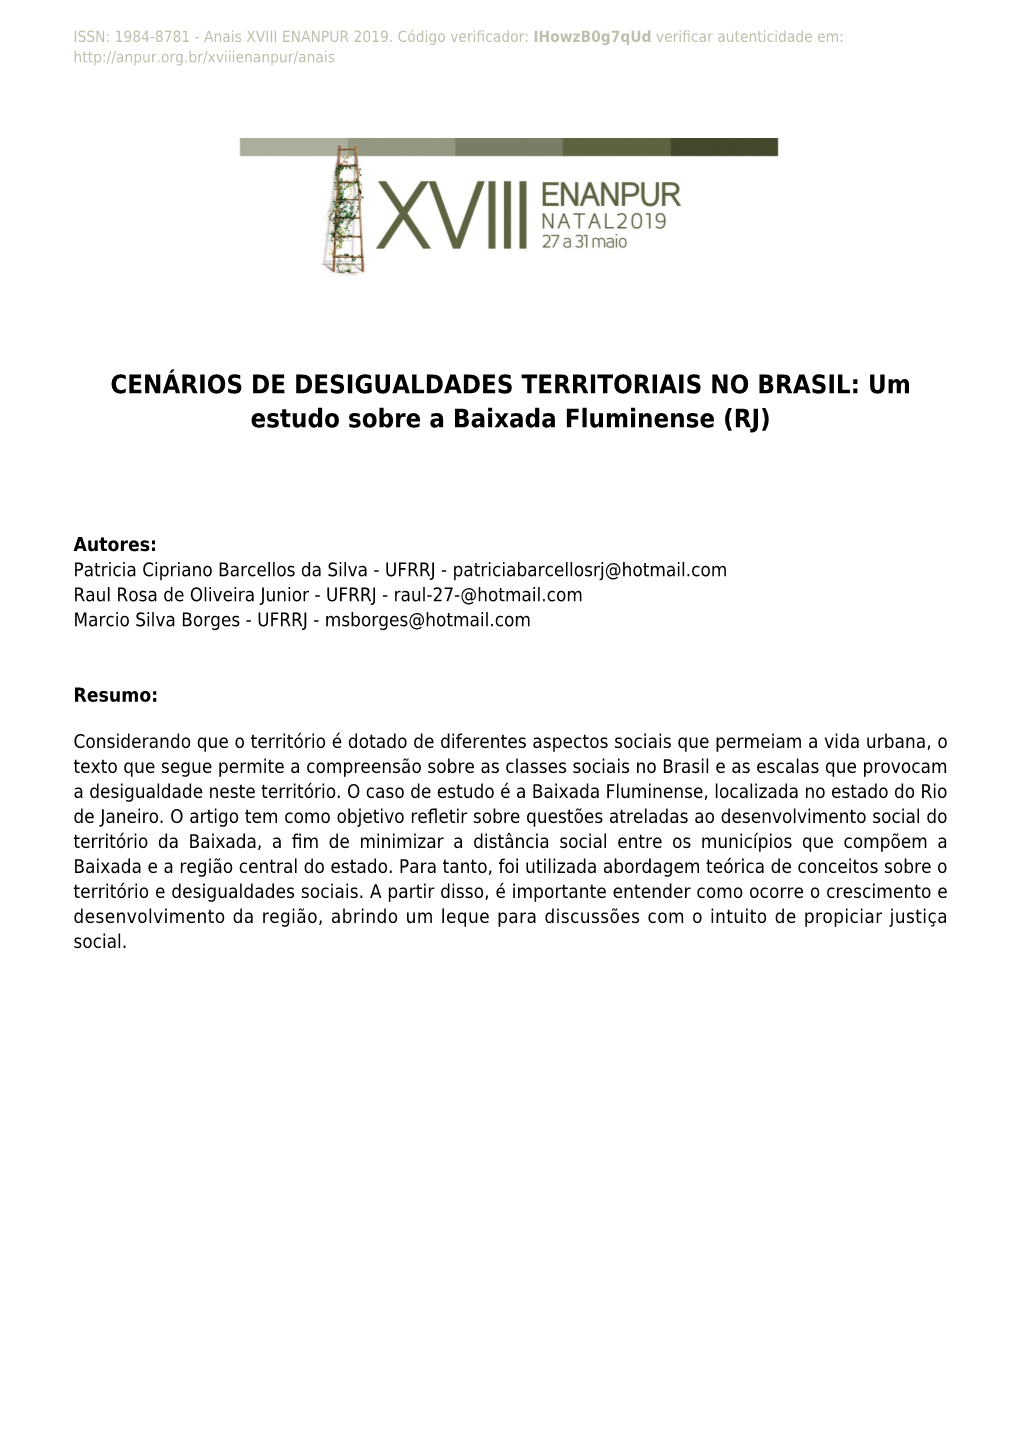 Um Estudo Sobre a Baixada Fluminense (RJ)